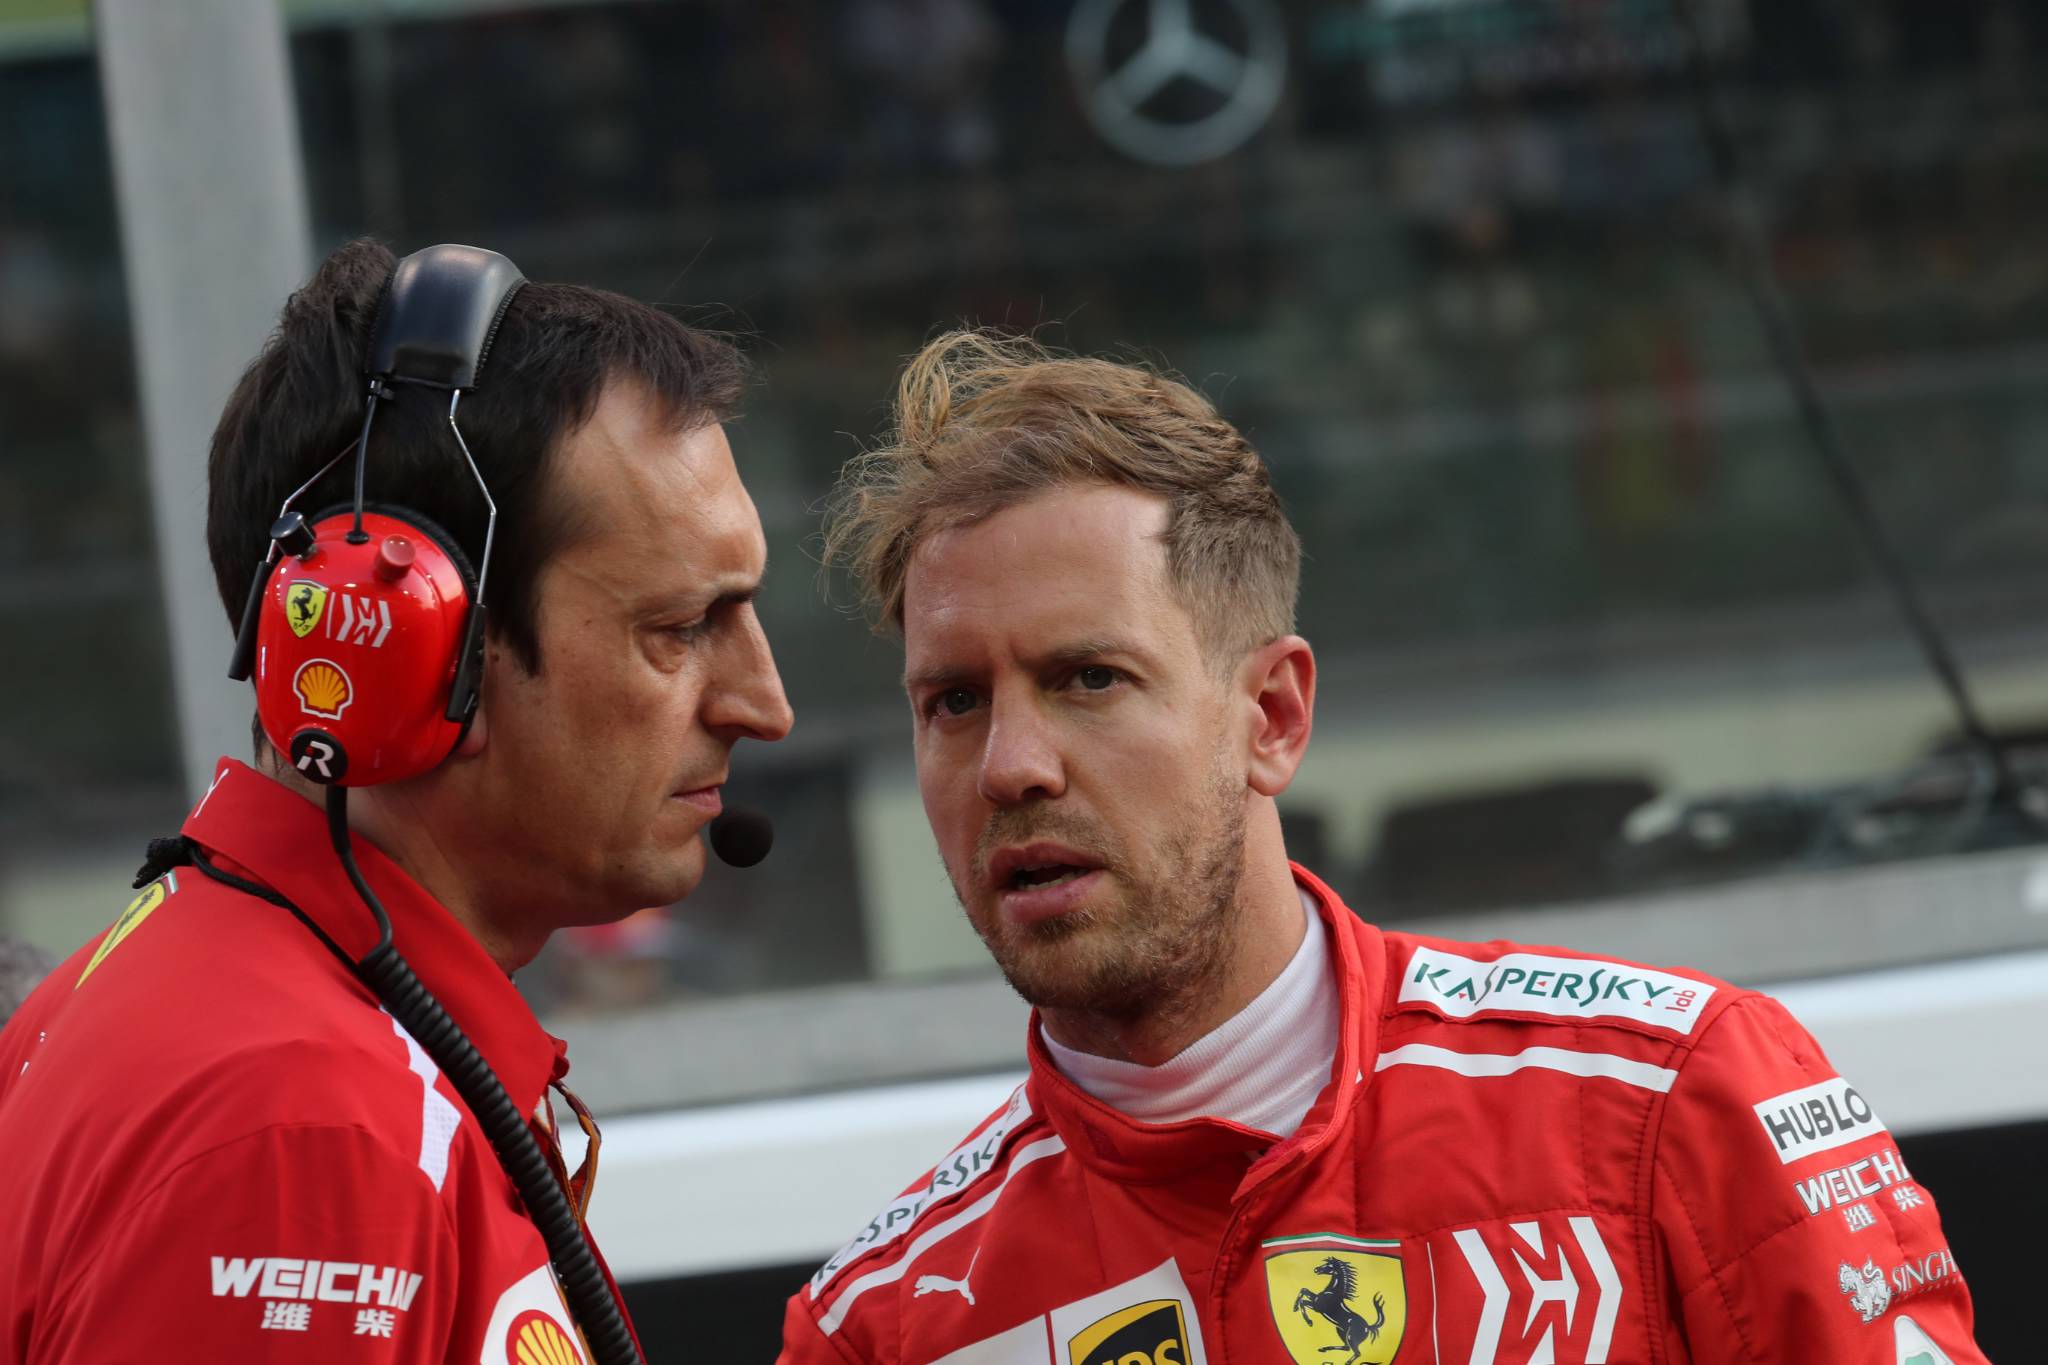 25.11.2018 - Race, Riccardo Adami (ITA) Ferrari Race Engineer and Sebastian Vettel (GER) Scuderia Ferrari SF71H 